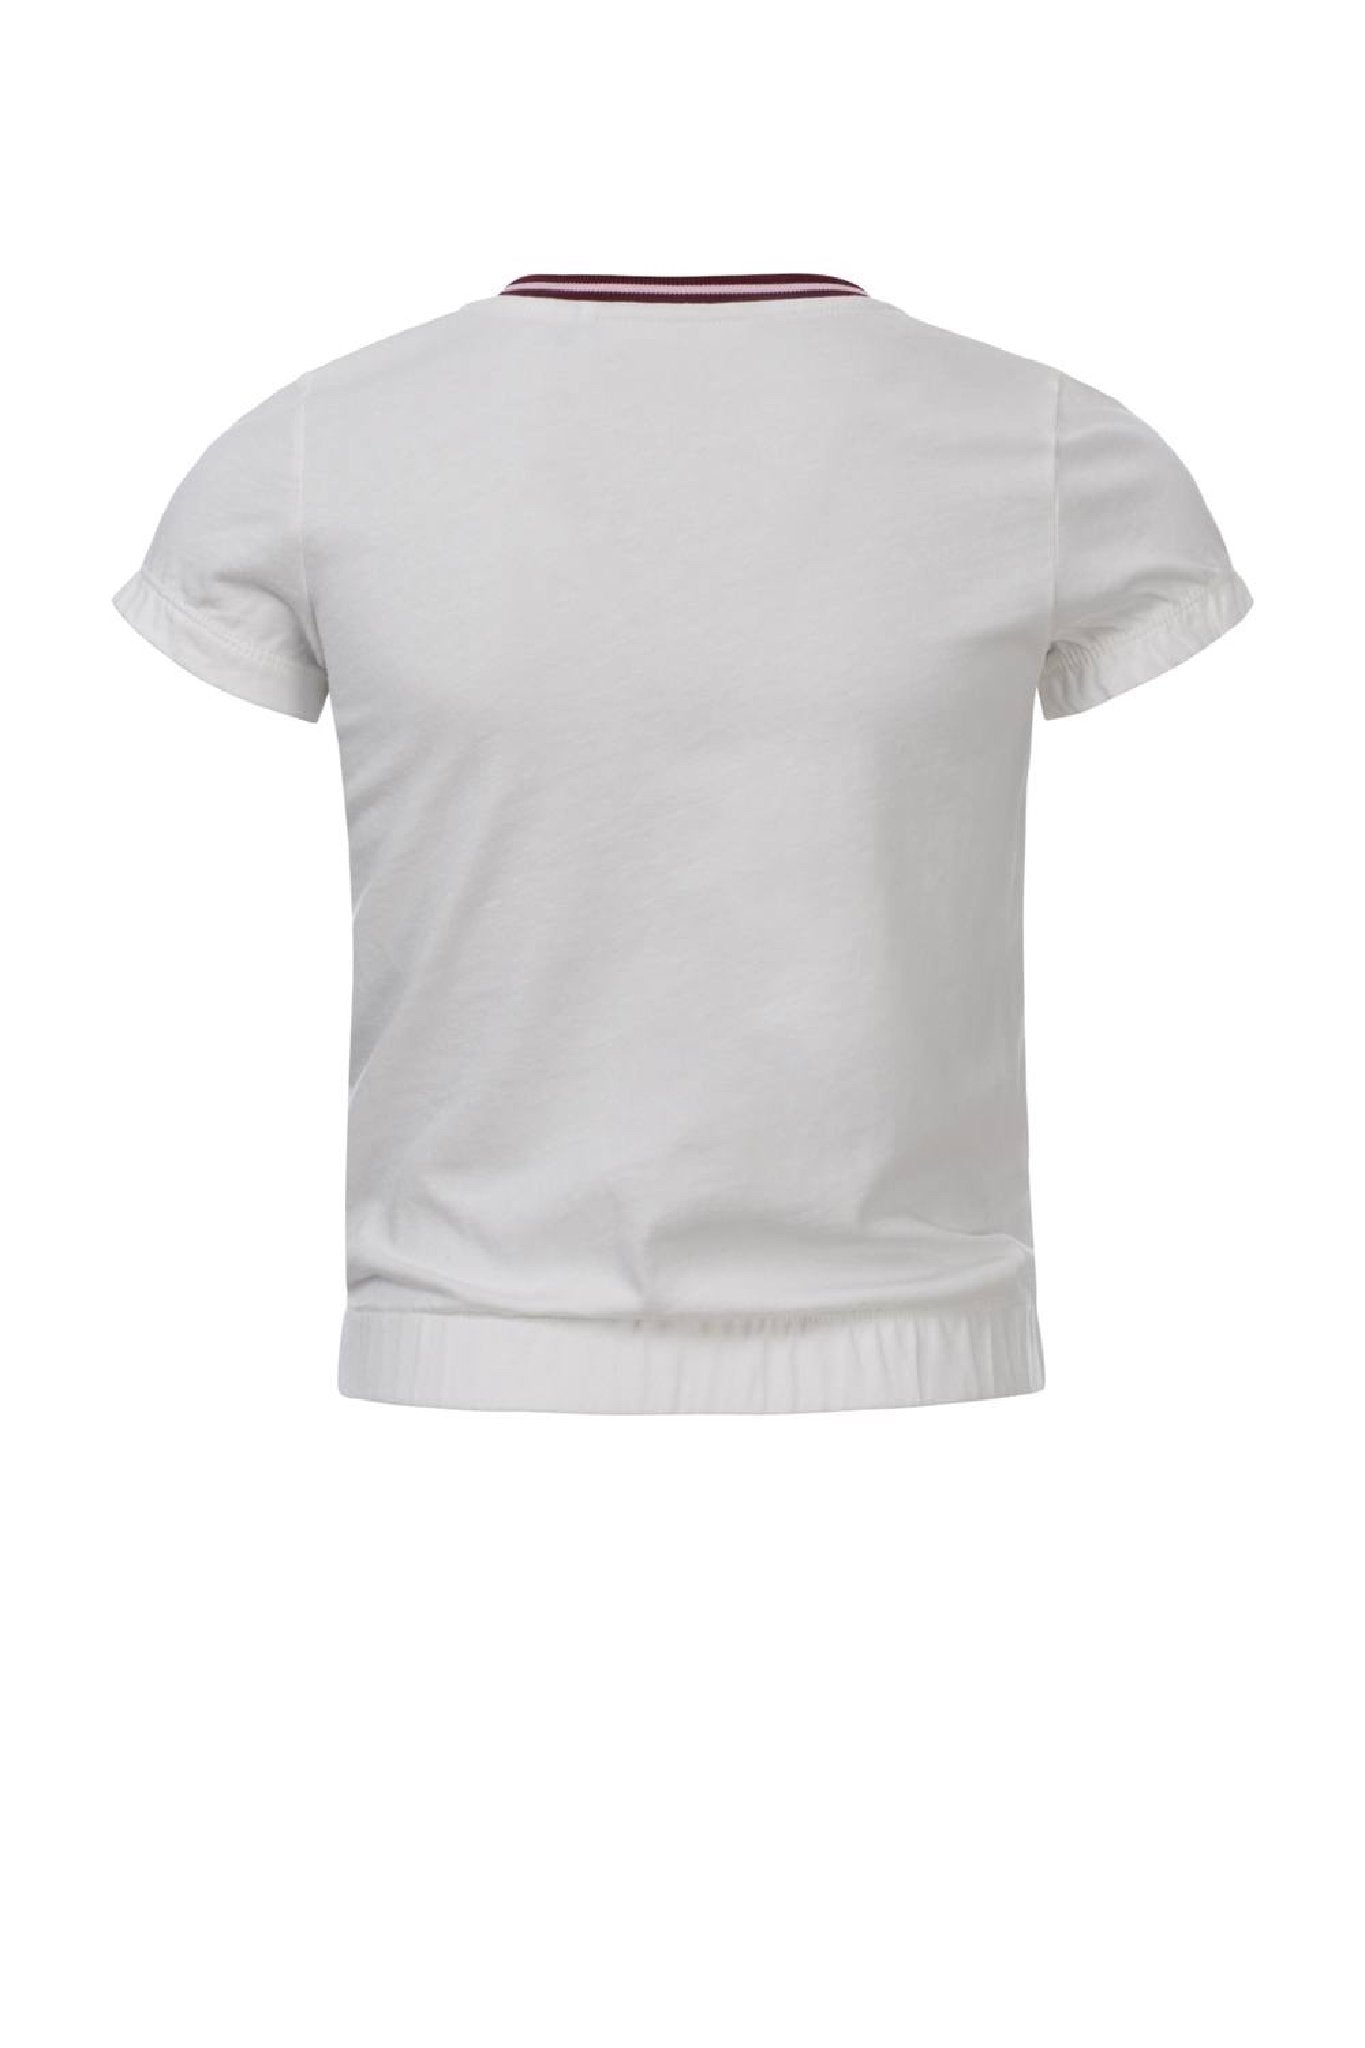 Meisjes Girls T-shirt s/s van Looxs in de kleur Off White in maat 164.